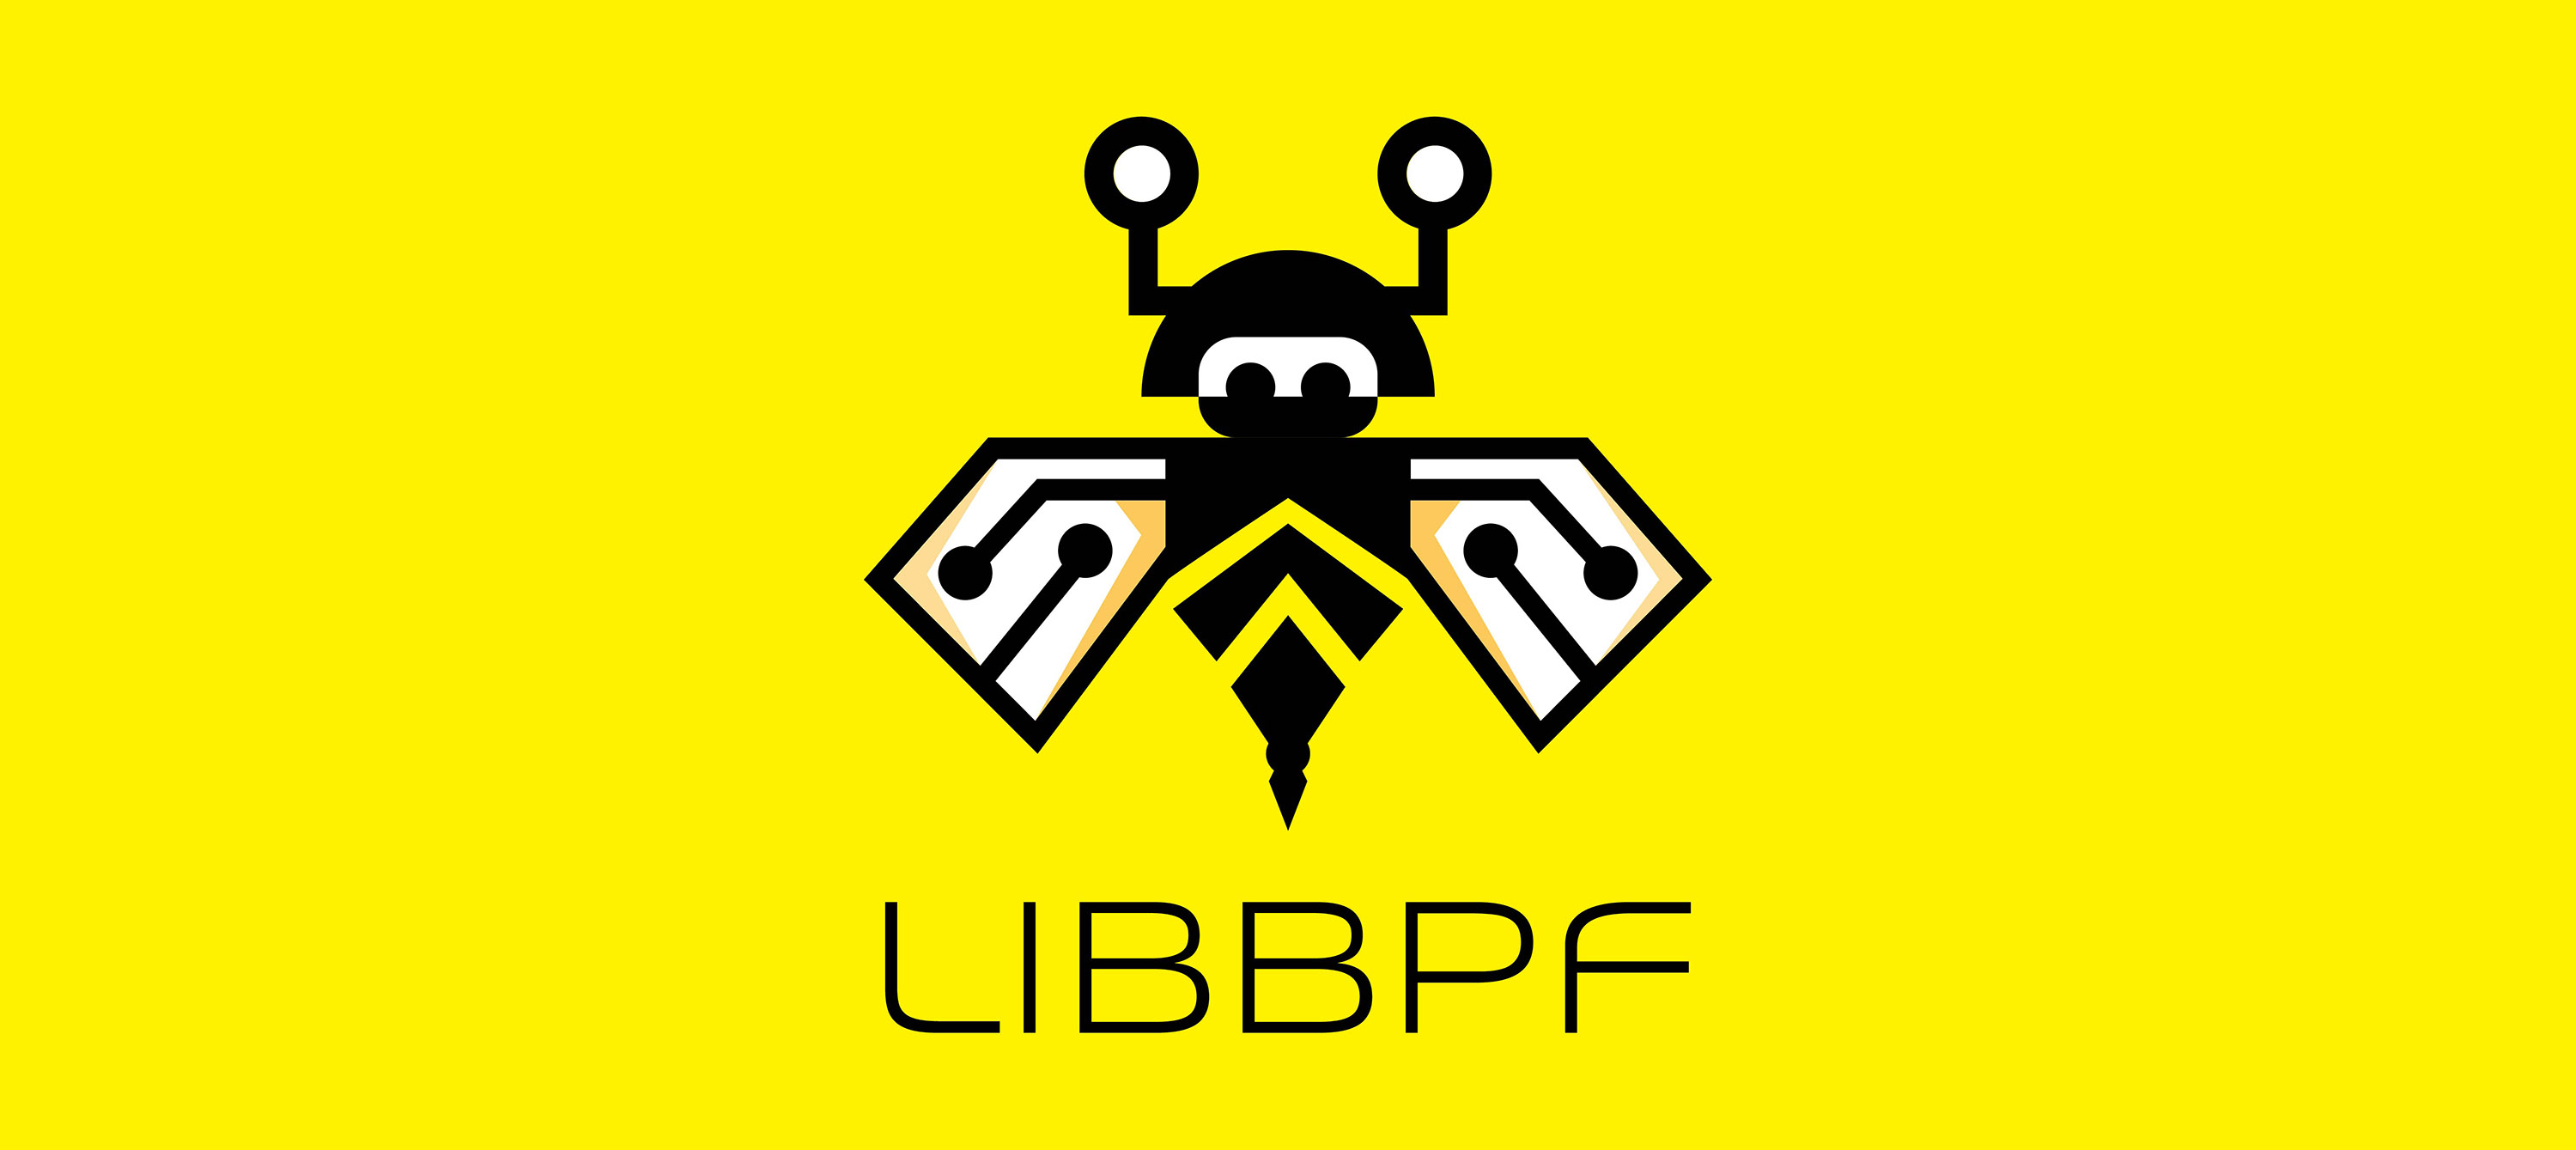 Libbpf logo